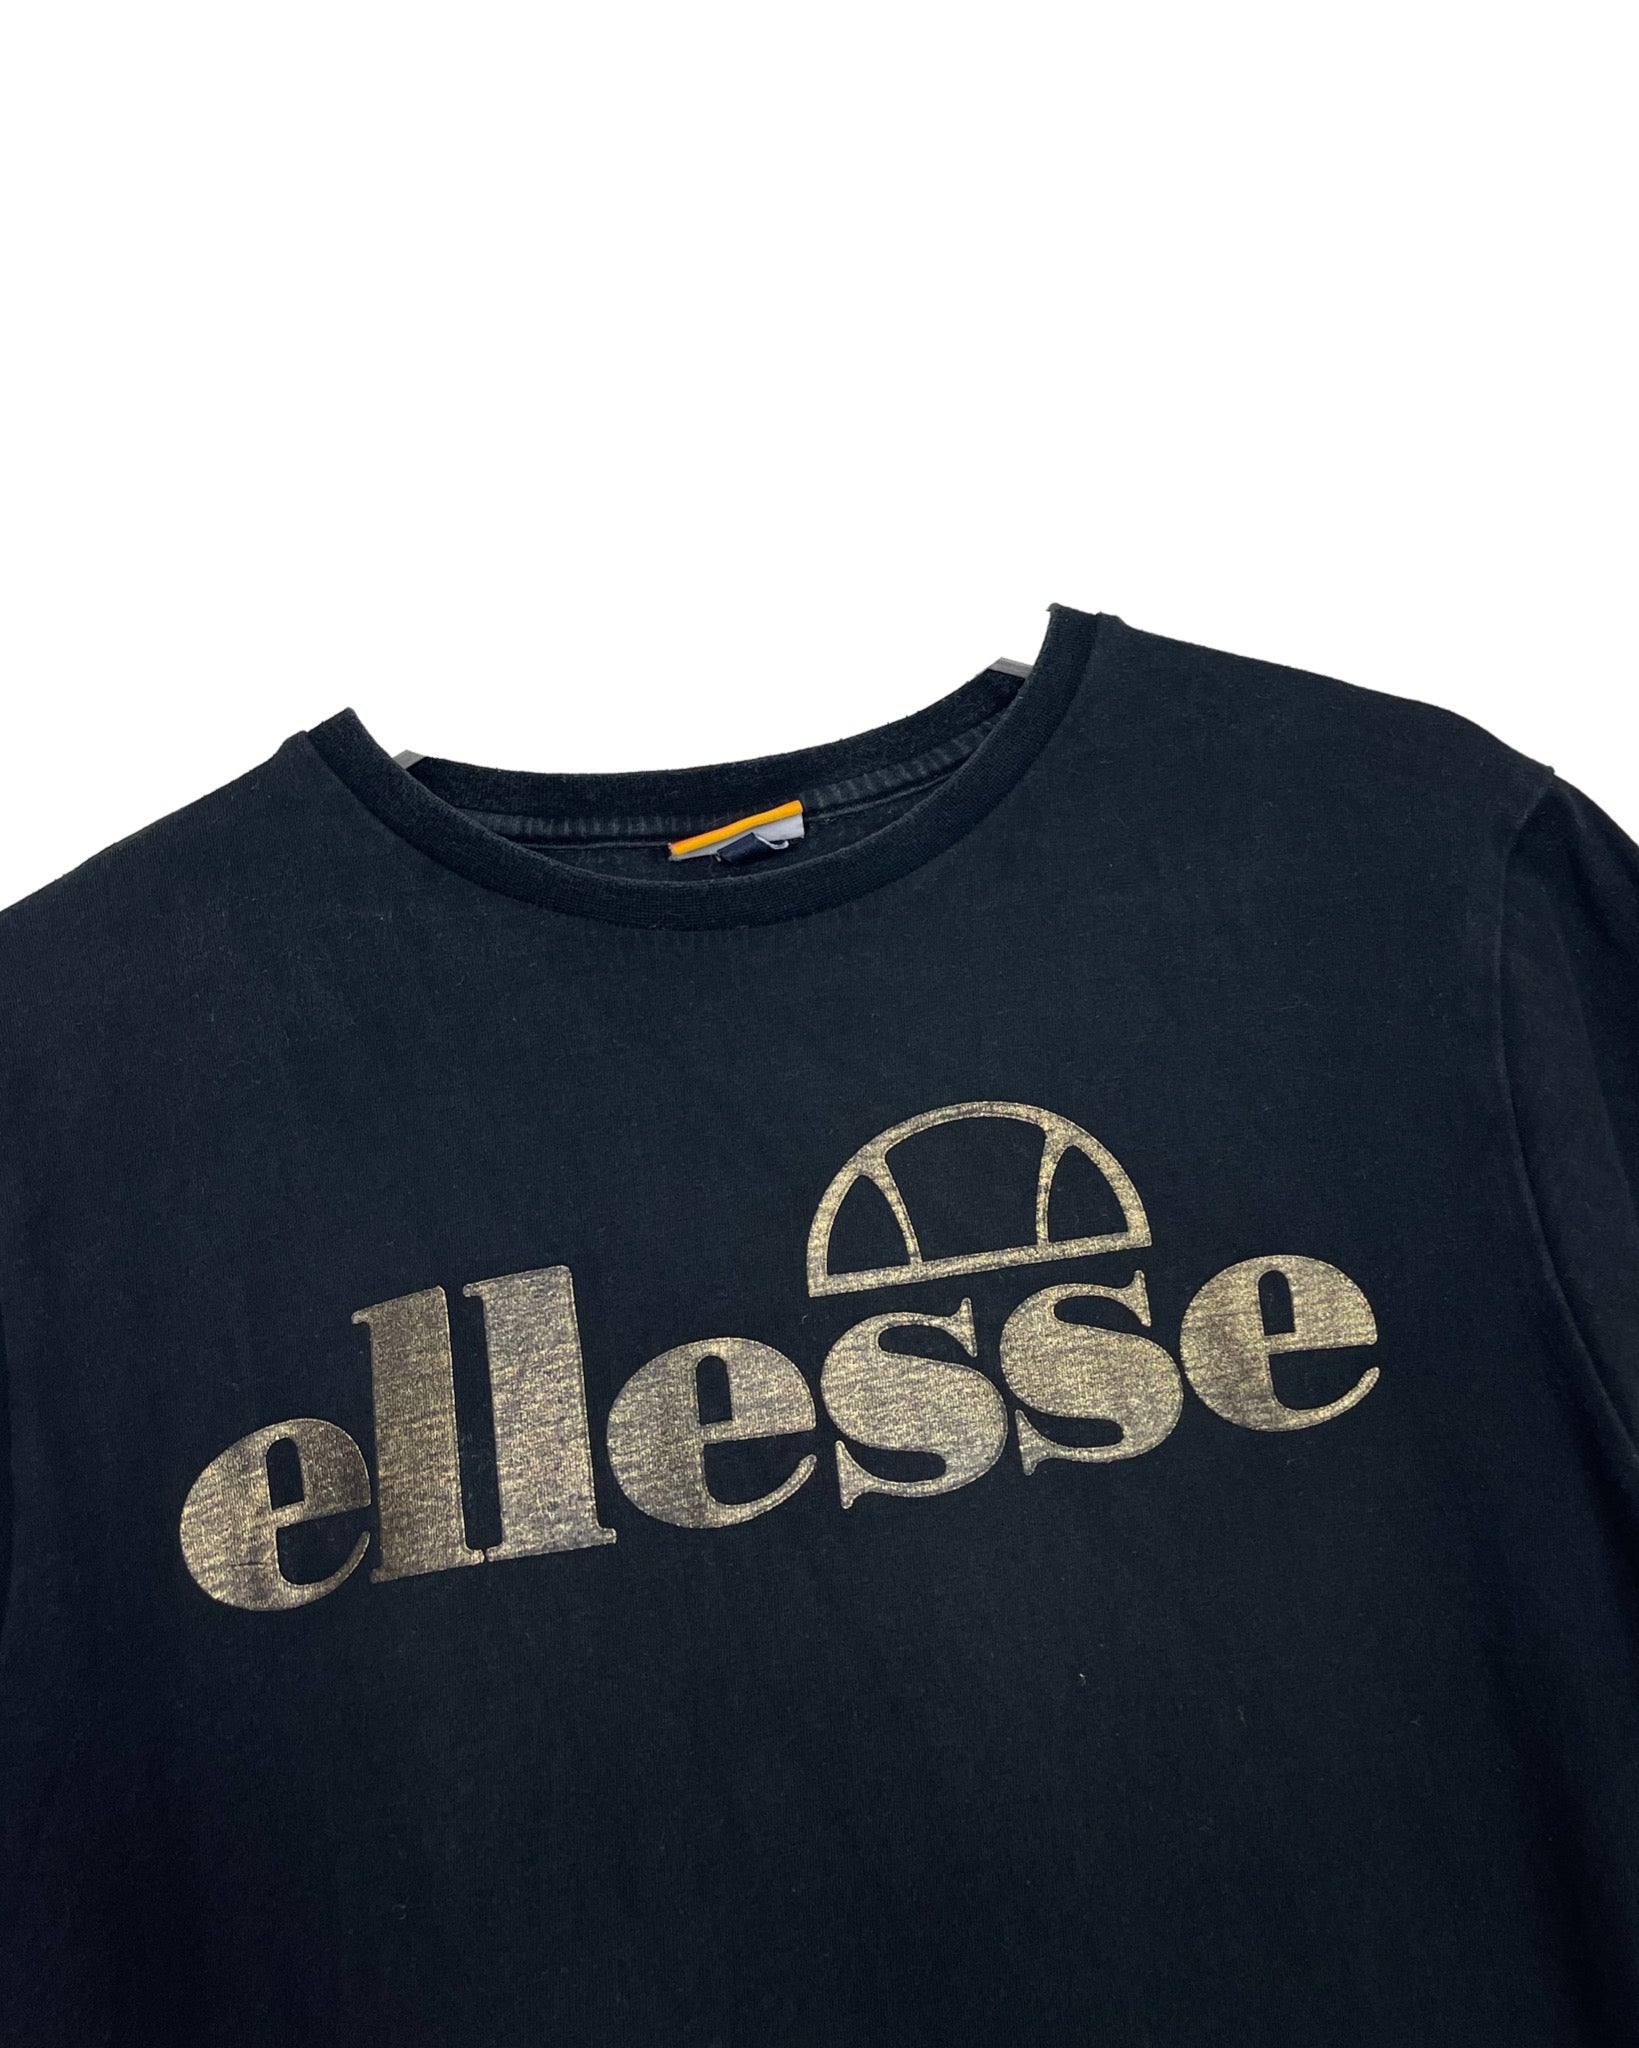  T-shirt Ellesse T-shirt - L - PLOMOSTORE